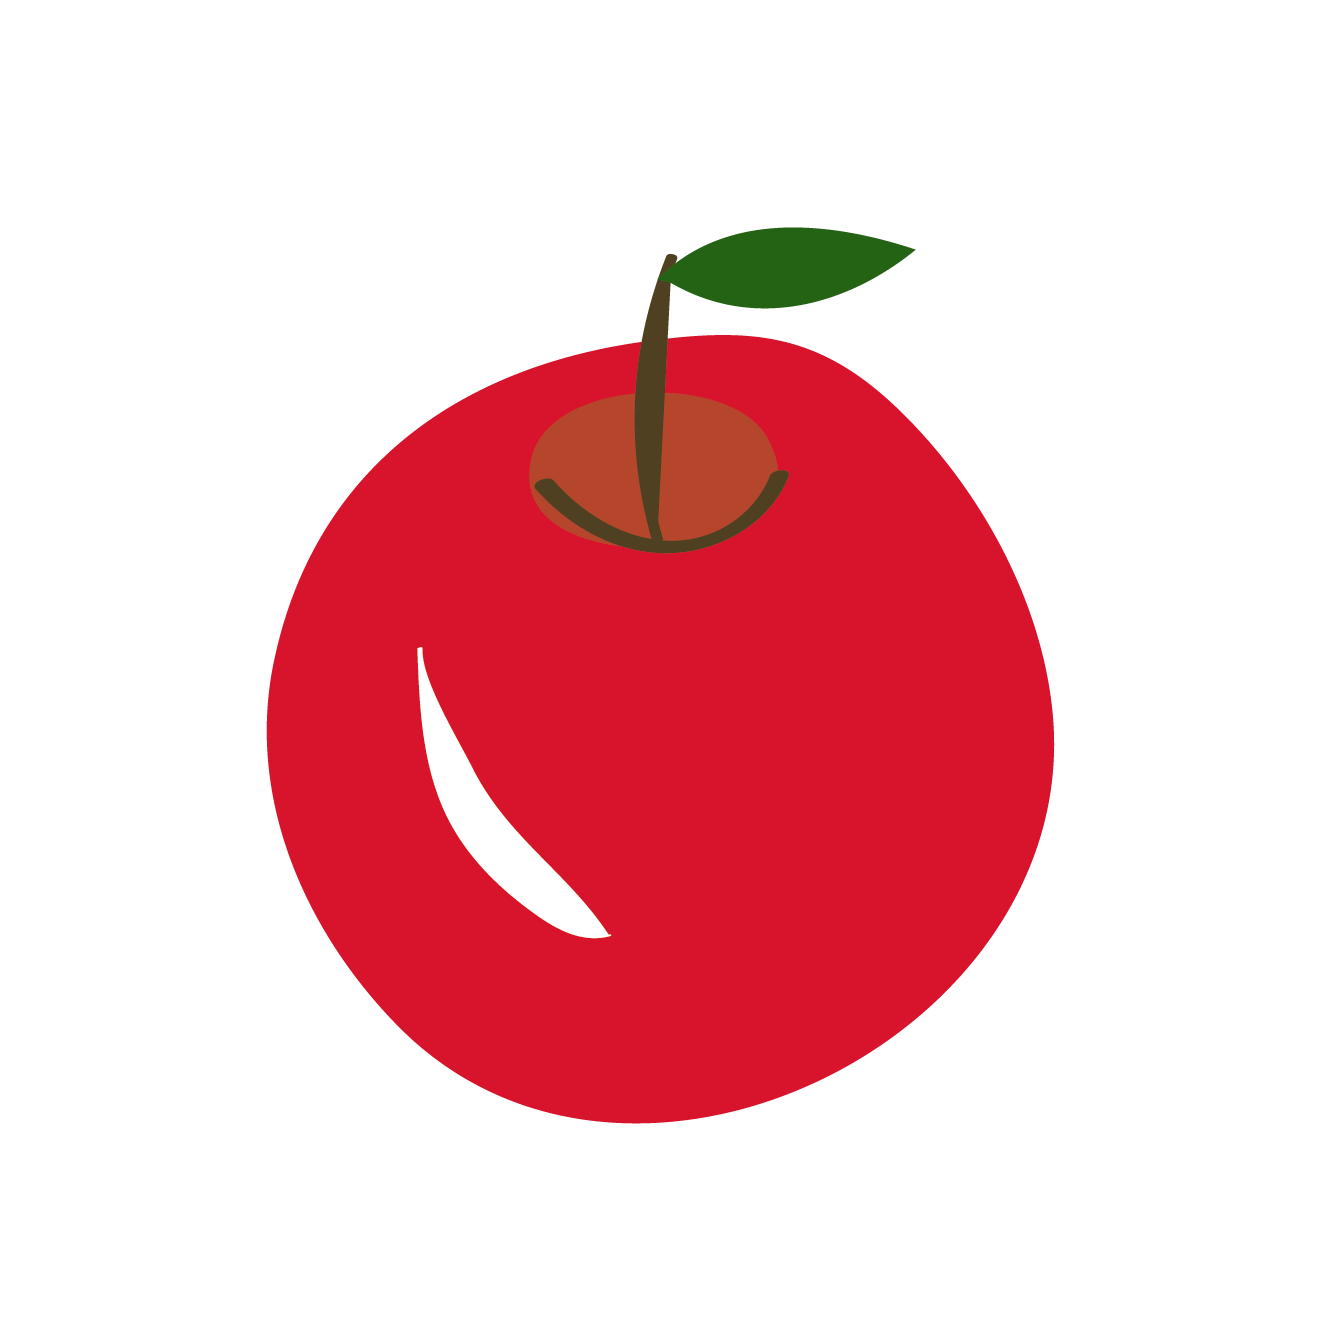 林檎 リンゴ りんご のイラスト フルーツ 果物 商用フリー 無料 のイラスト素材なら イラストマンション